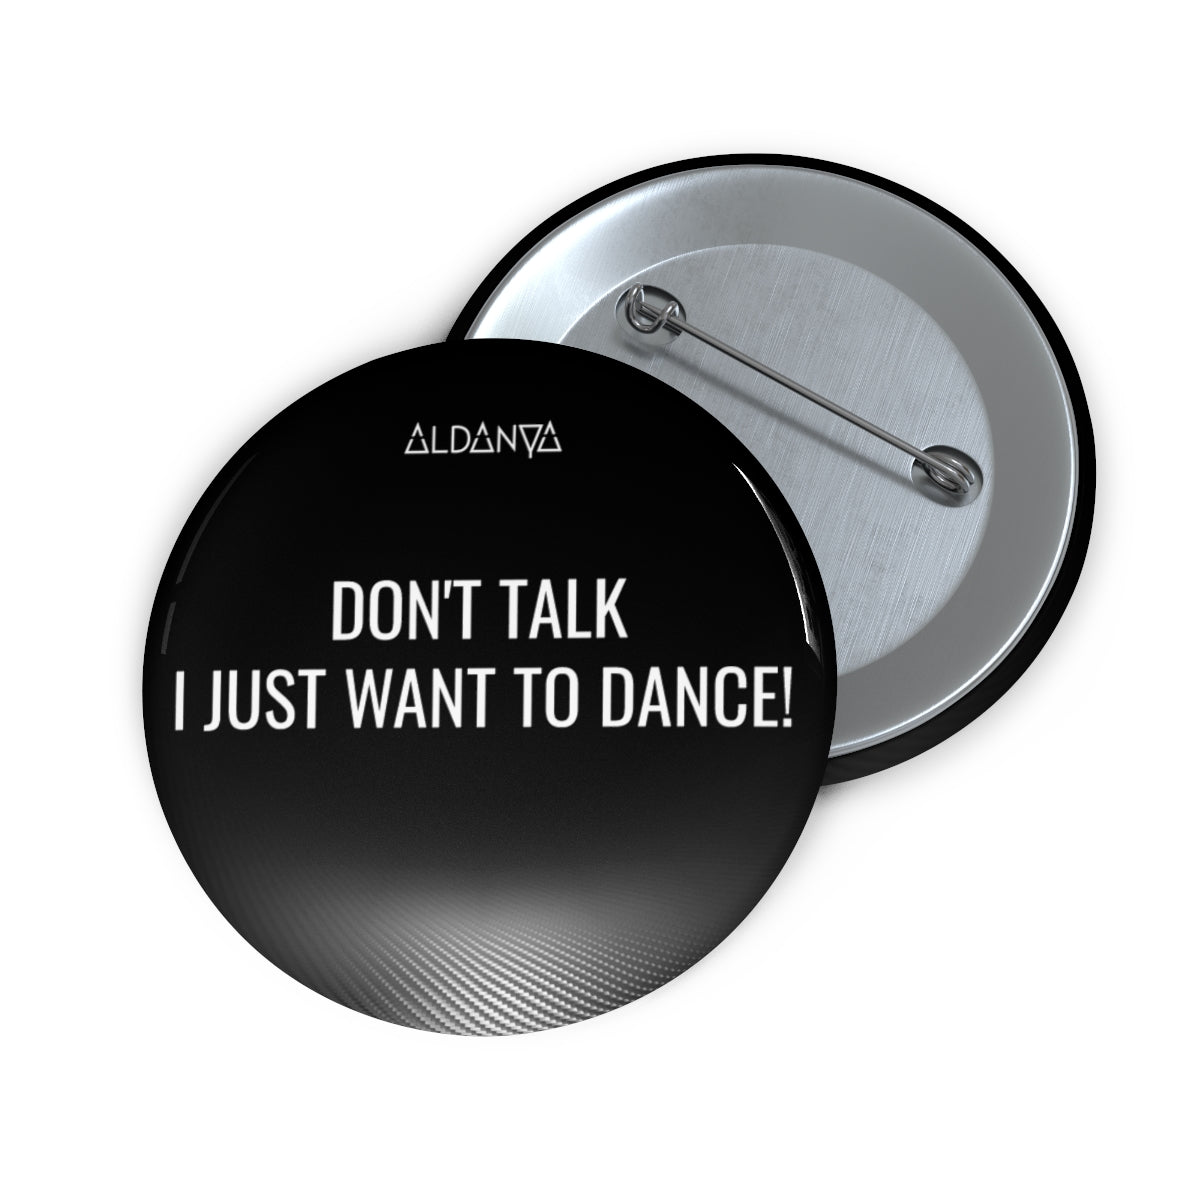 ALDANYA - "Don't talk I just wanna dance" - Custom Pin Buttons